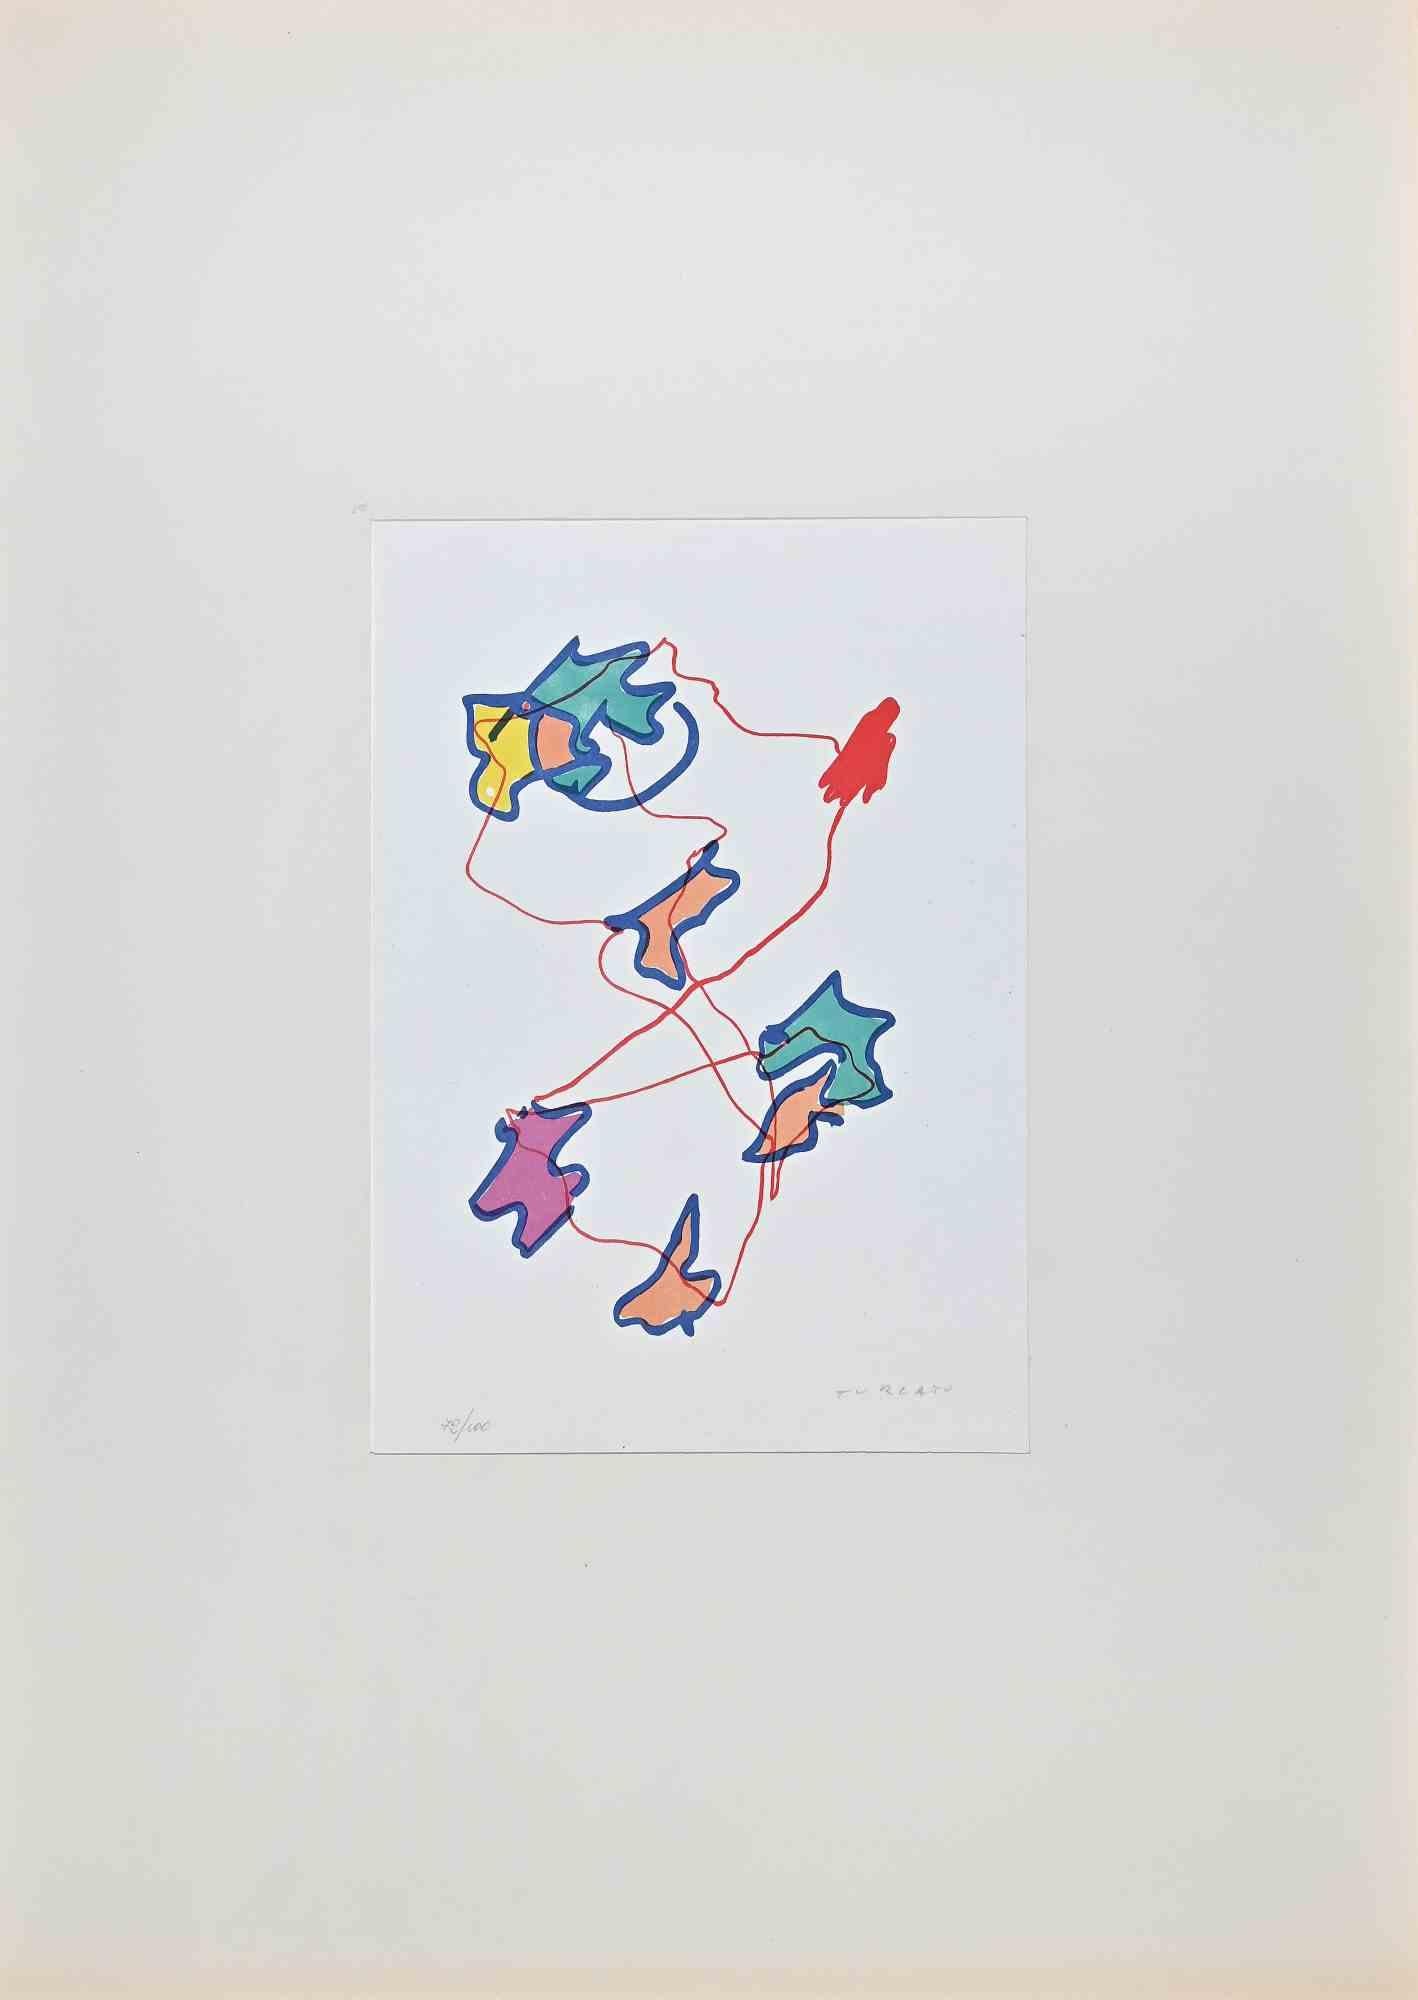 Composition abstraite est une lithographie colorée réalisée par l'artiste contemporain Giulio Turcato en 1973.

Signé à la main au crayon en bas à droite.

Numéroté dans la marge inférieure, édition 72/100.

Label d'authenticité de La Nuova Foglio